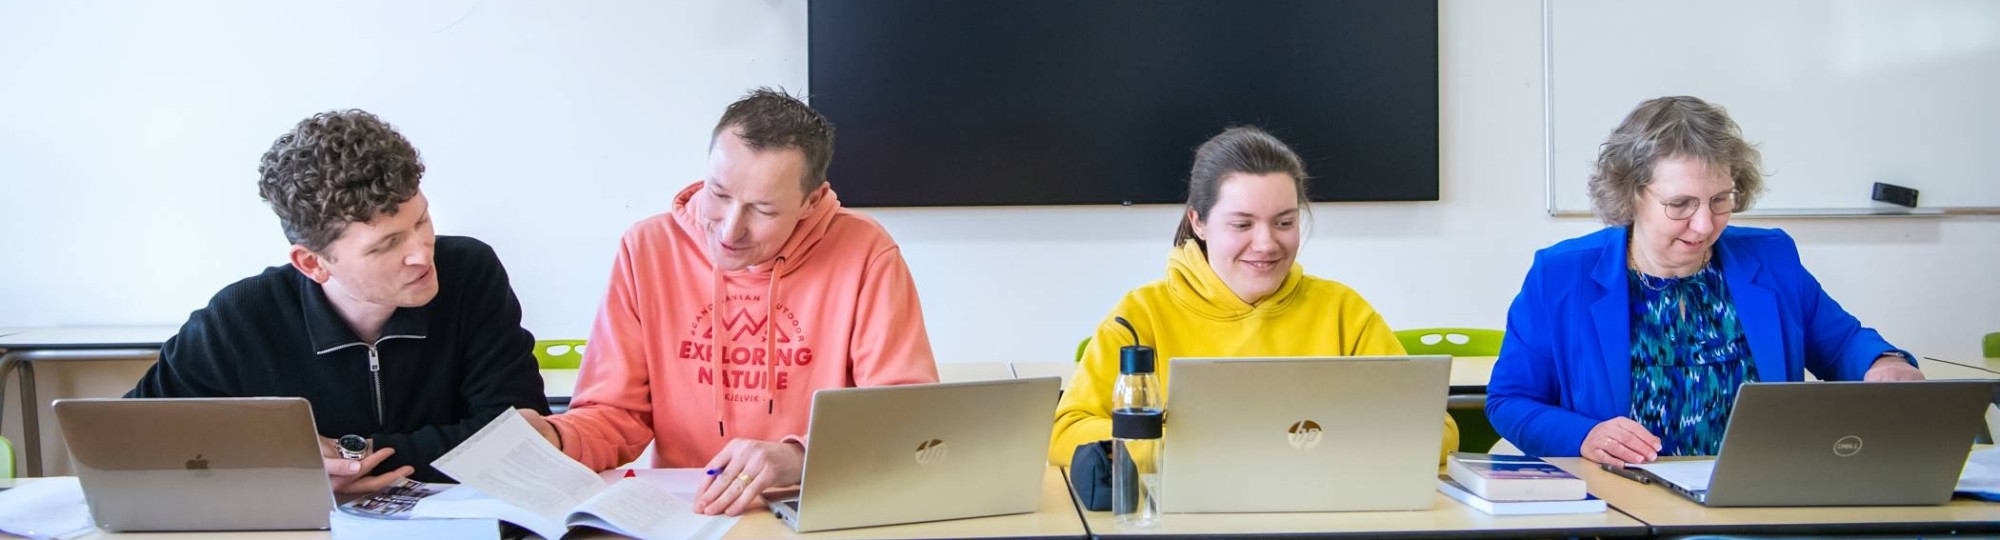 4 masterstudenten op een rij met laptops voor zich die bezig zijn zich aan te melden